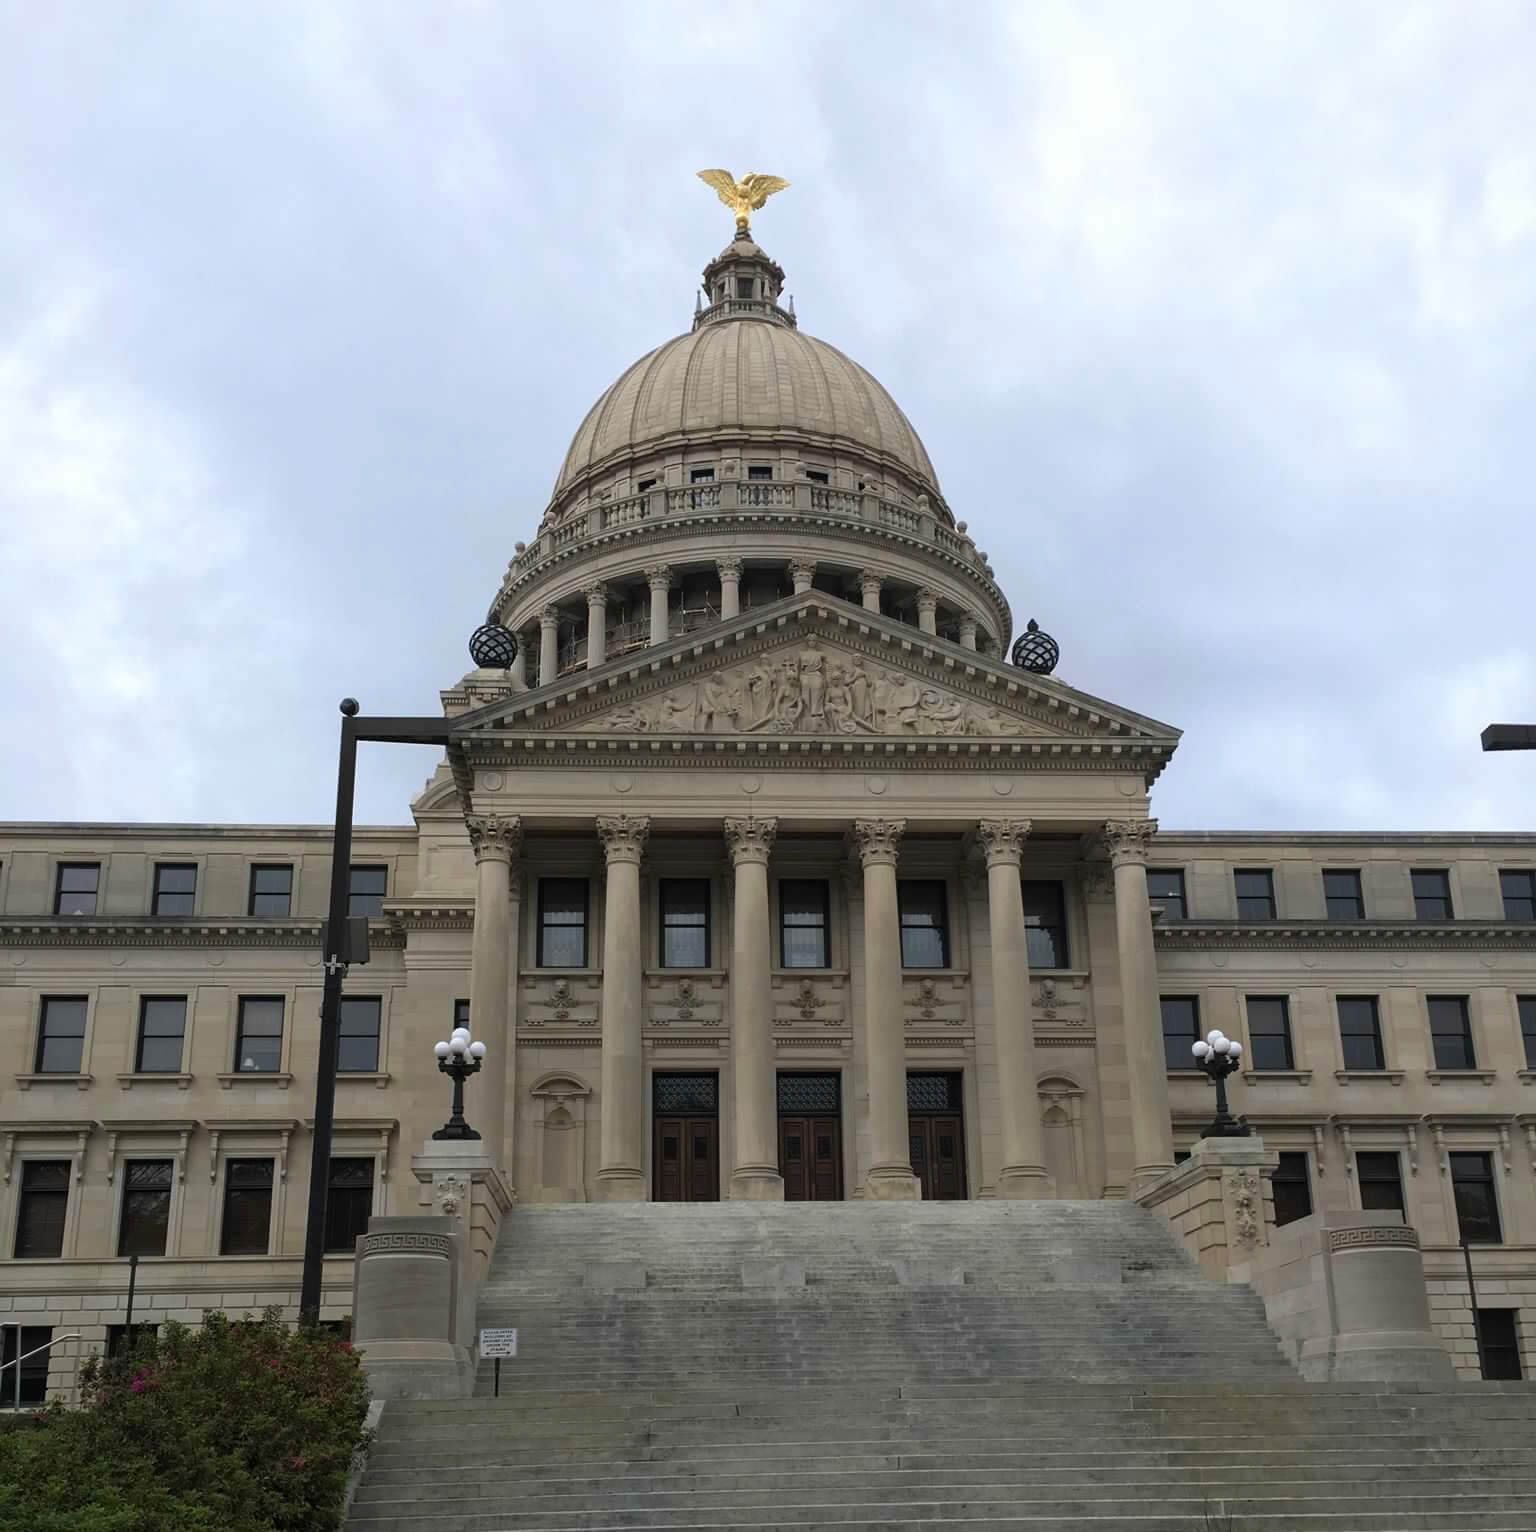 Legislature may look into Reeves' emergency powers